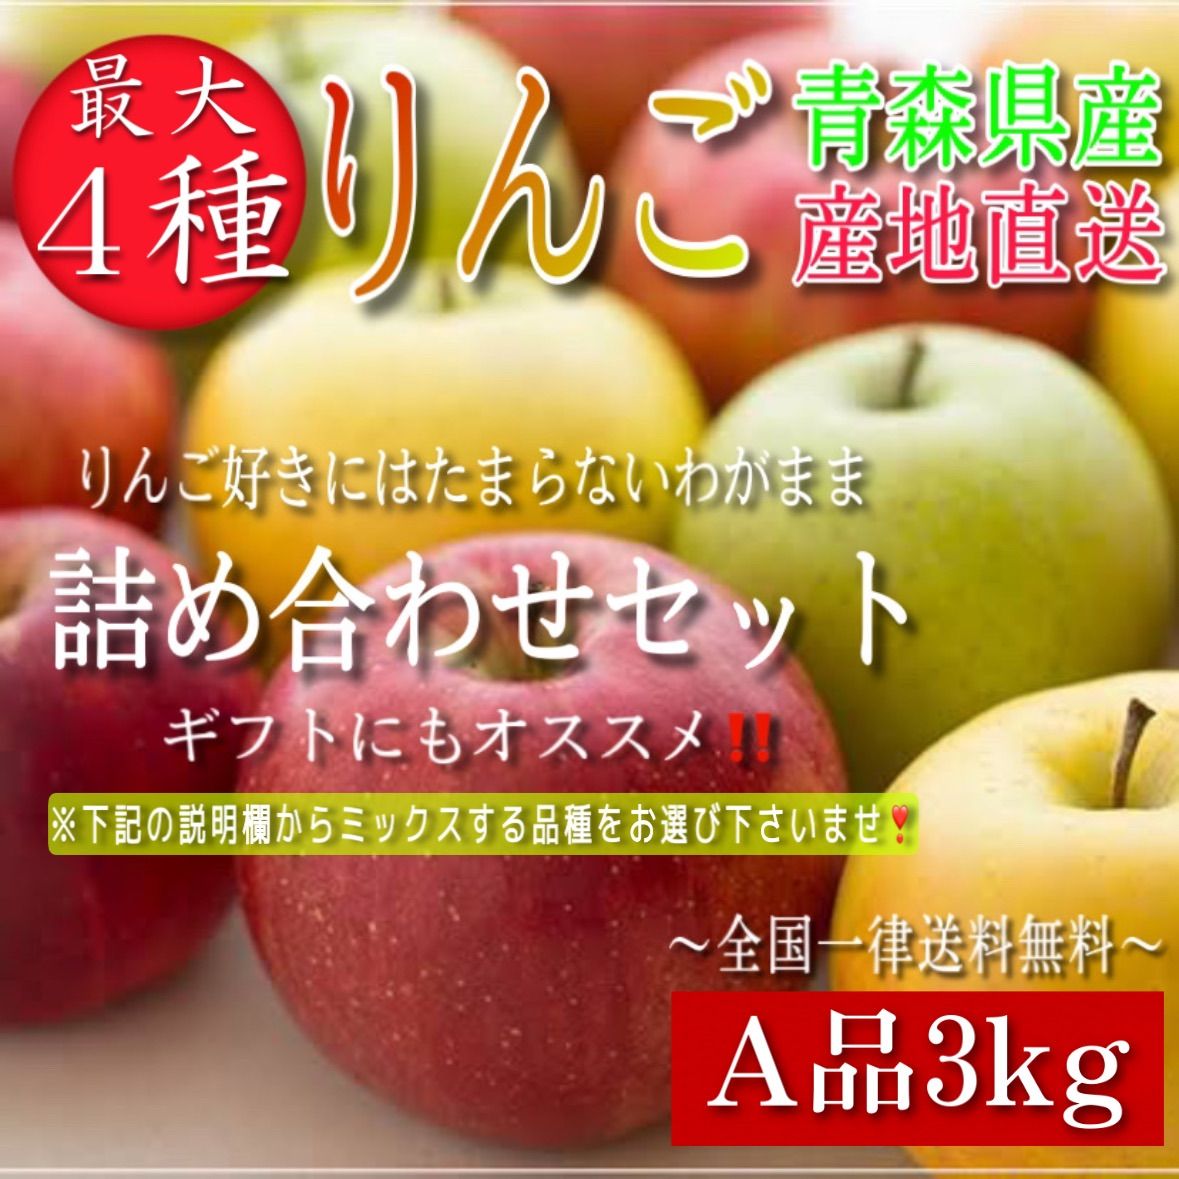 青森県産 最大4種ミックス りんご【A品3kg】【送料無料】【農家直送】ふじ-0